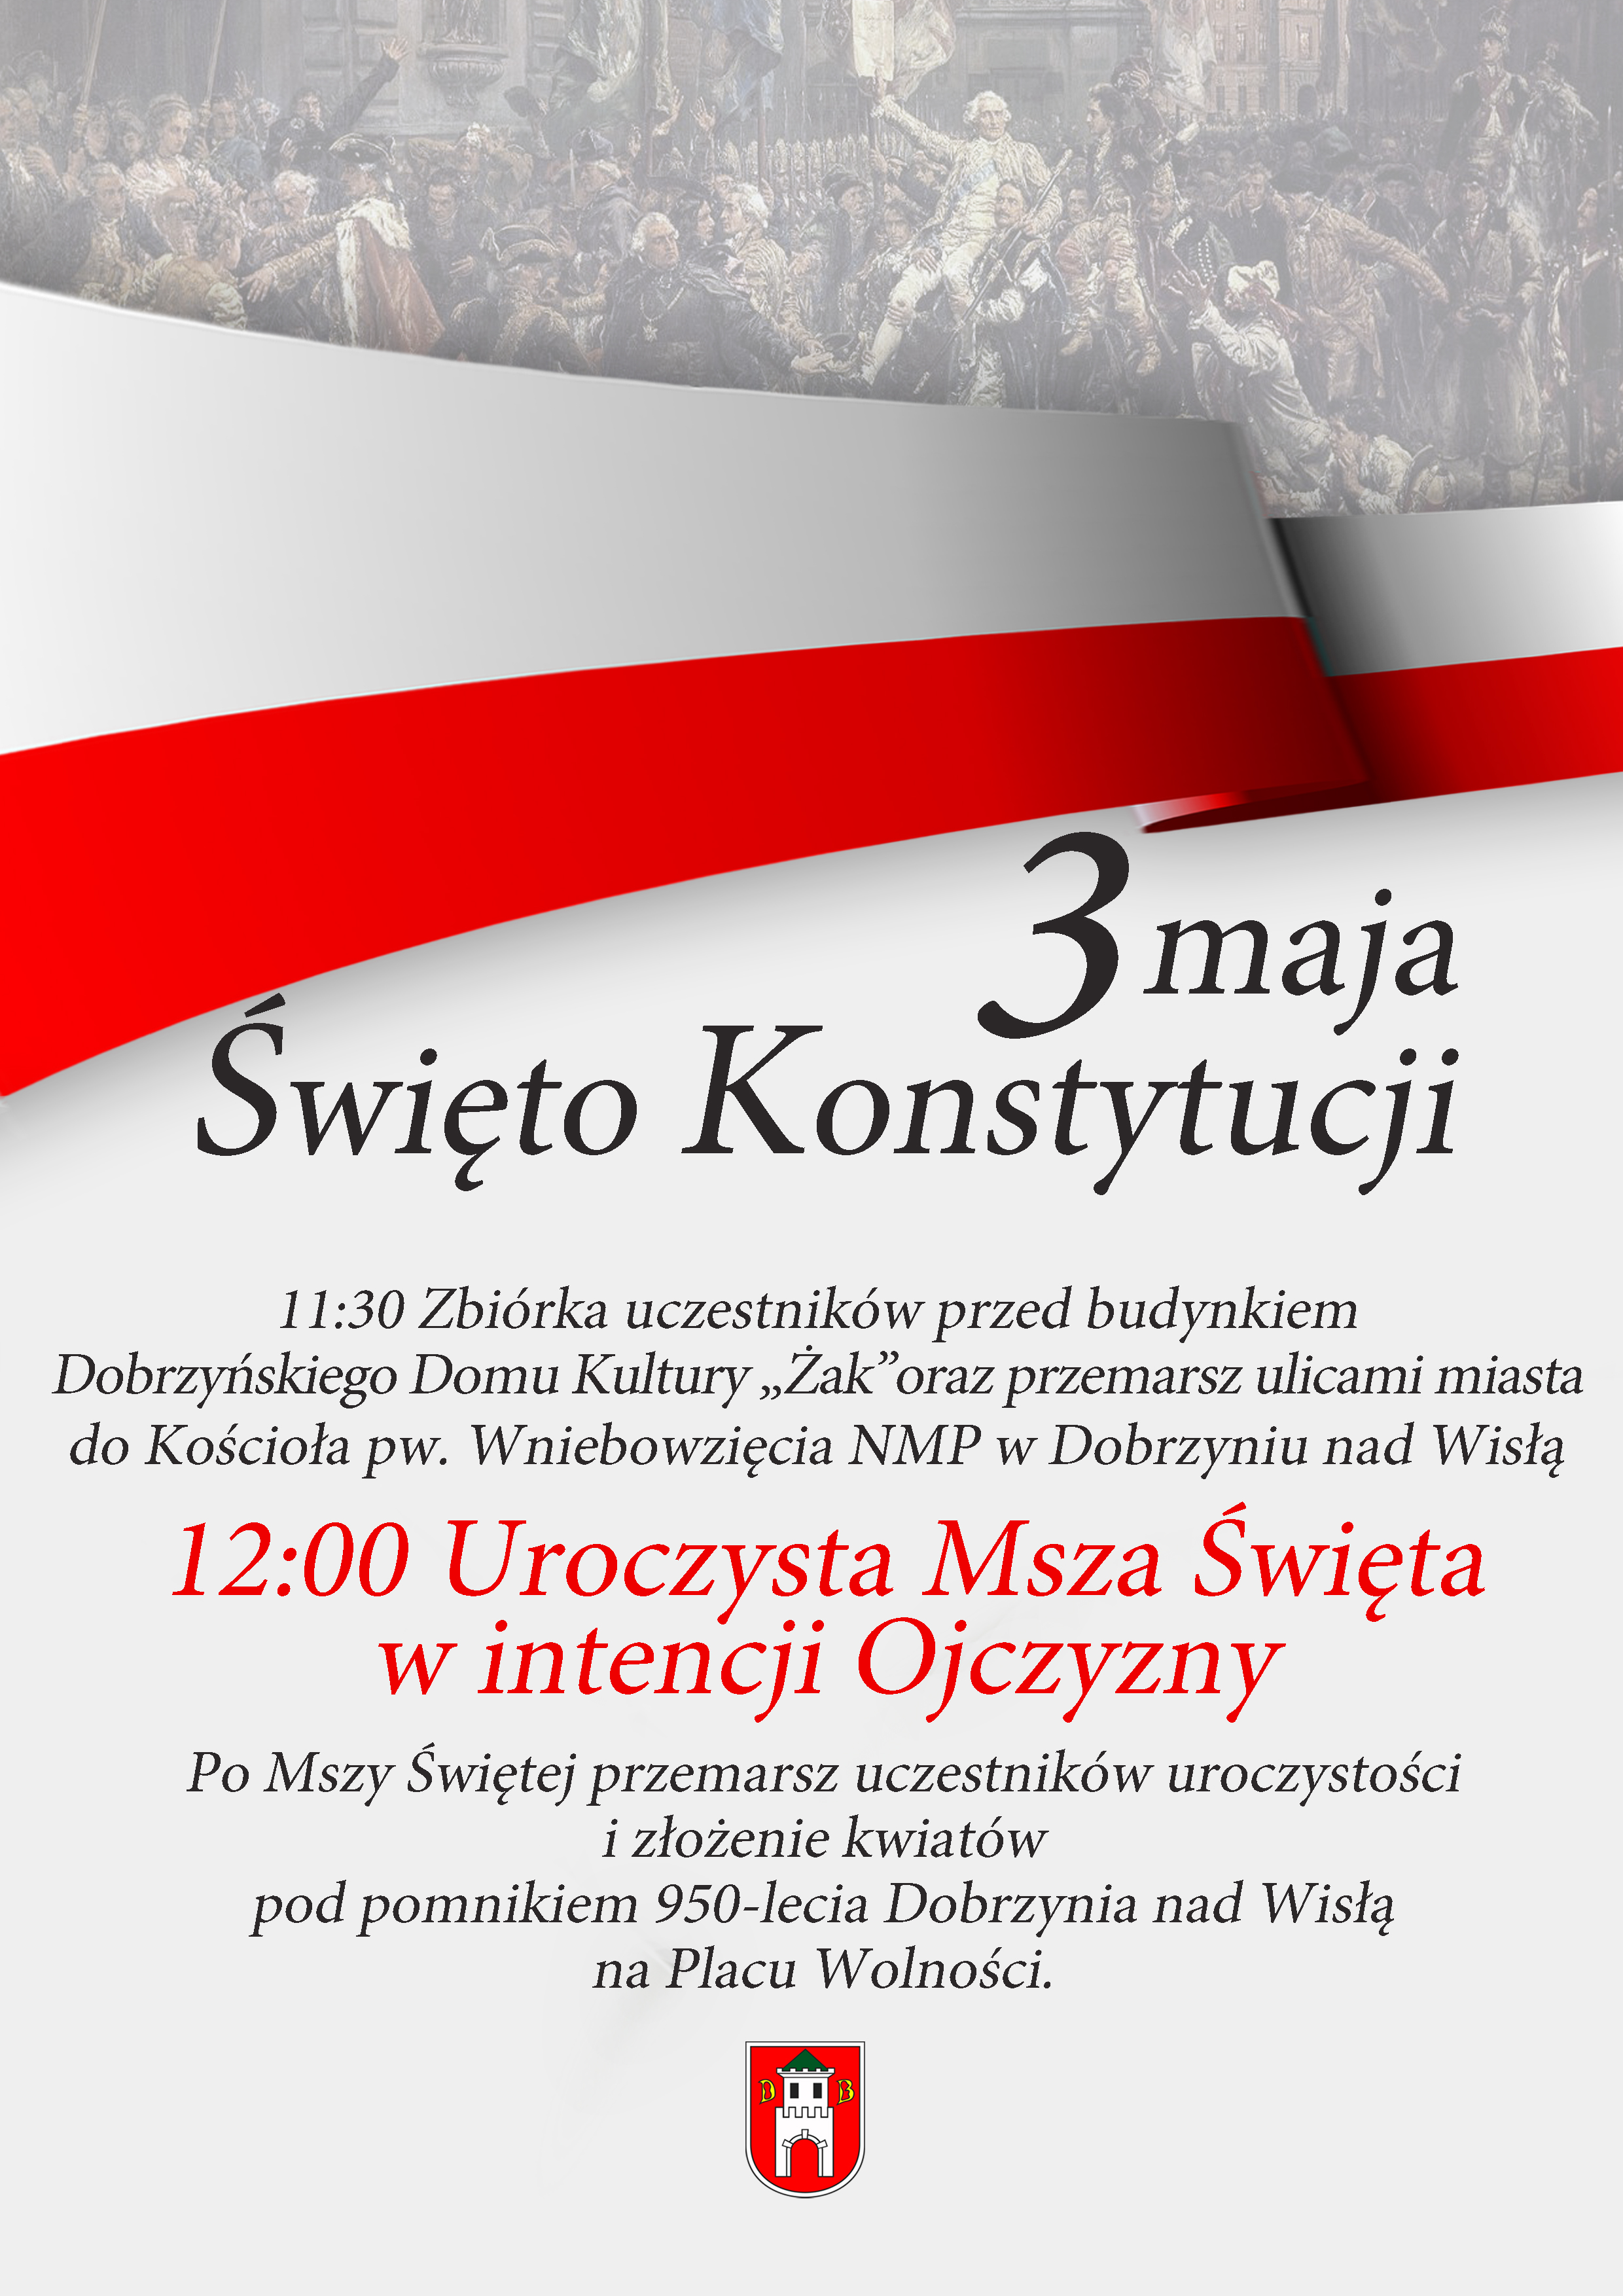 Zapraszamy na uroczystość obchodów Święta Konstytucji 3 Maja